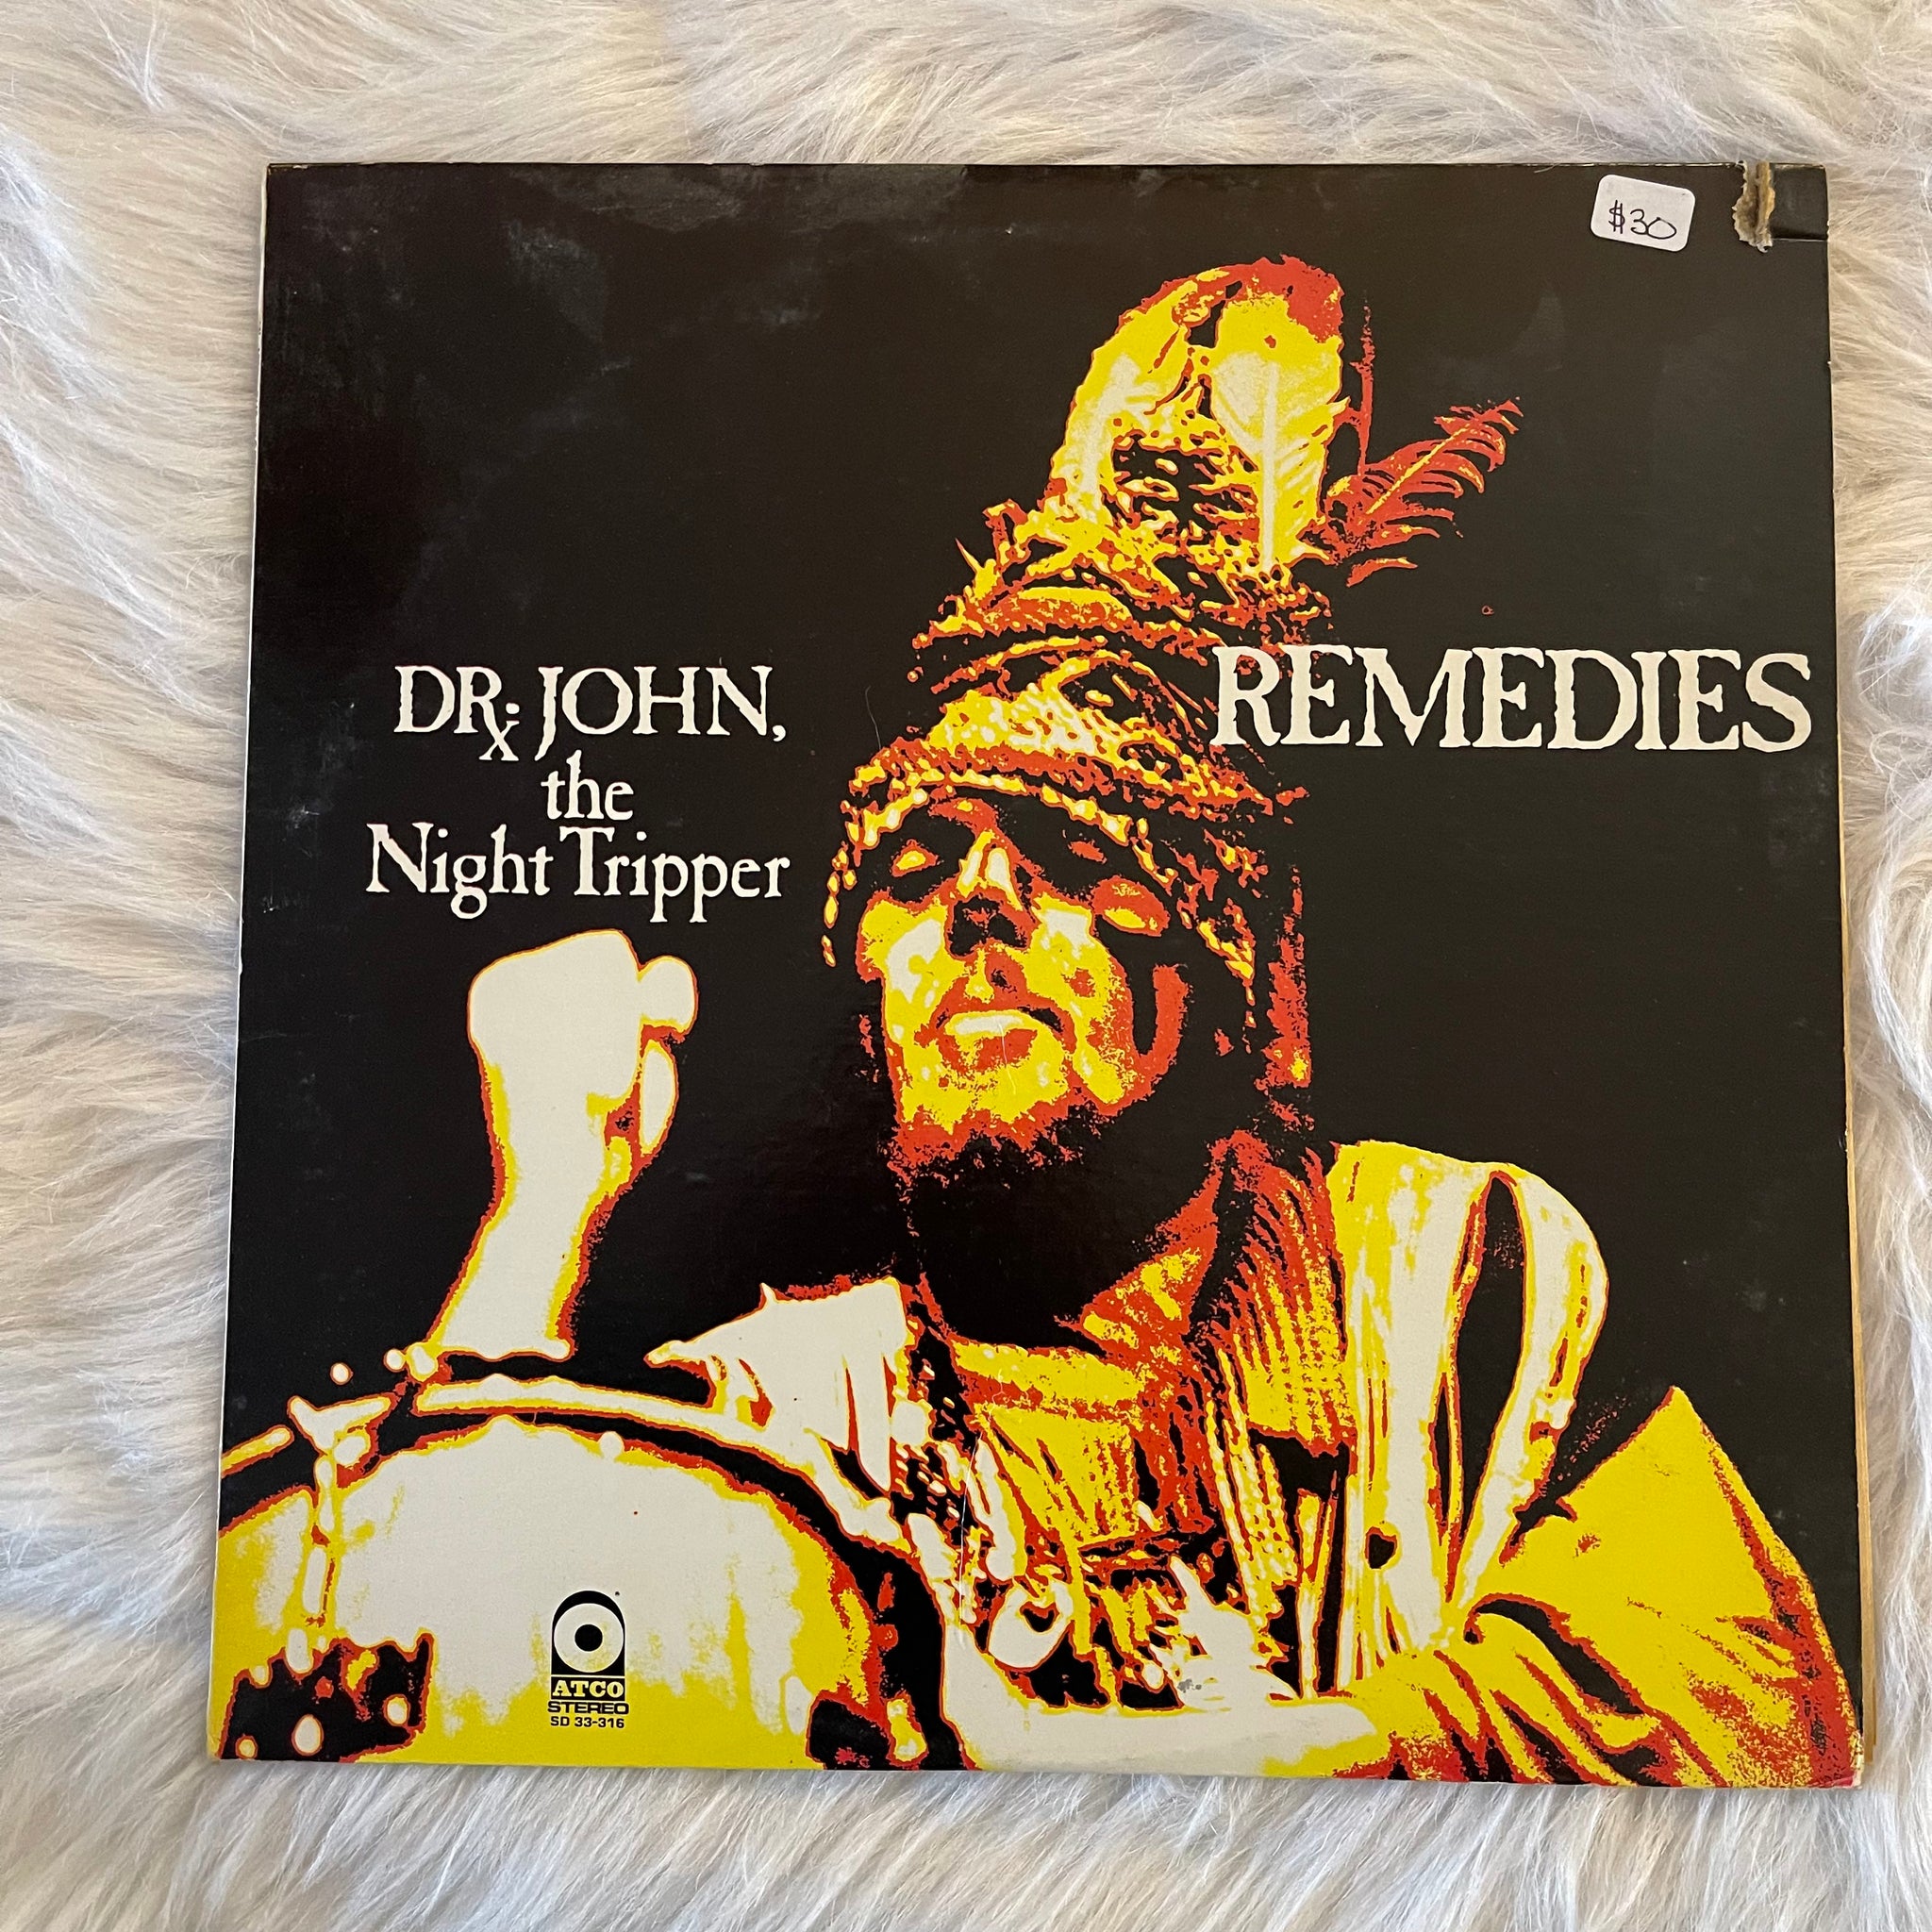 Dr. John the Night Tripper-Remedies